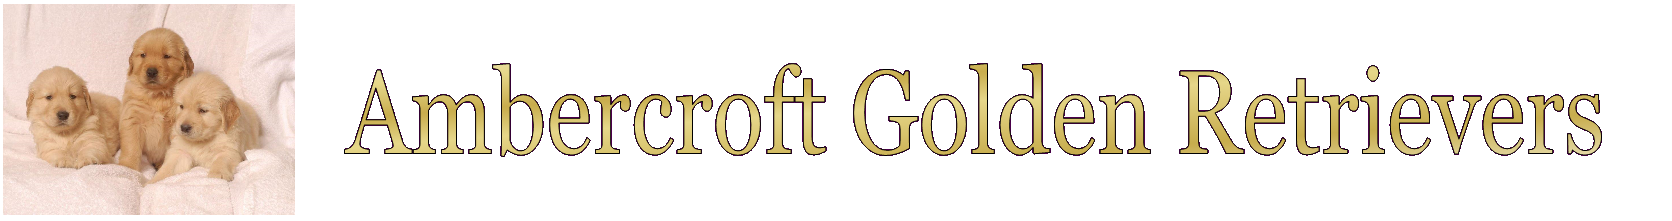 Ambercroft Golden Retrievers